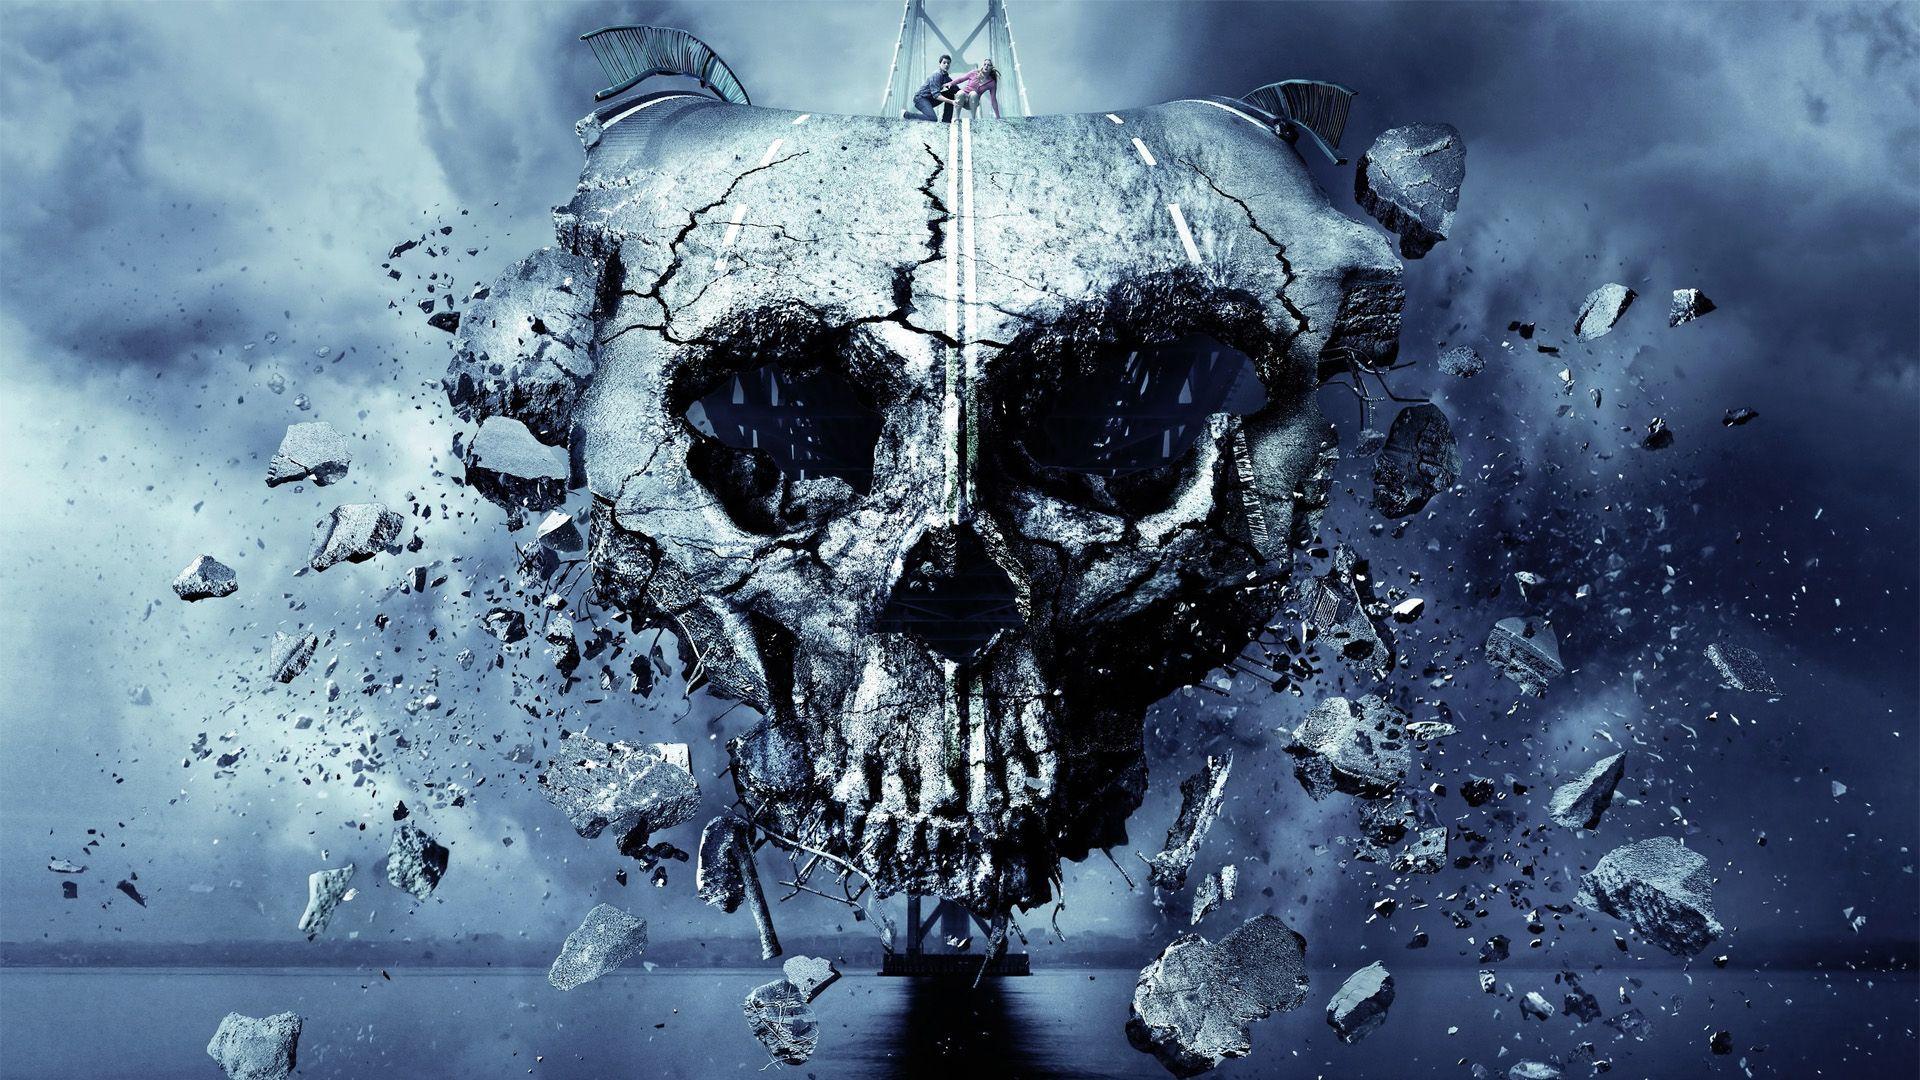 FINAL DESTINATION 5 dark skull skulls horror wallpaperx1080